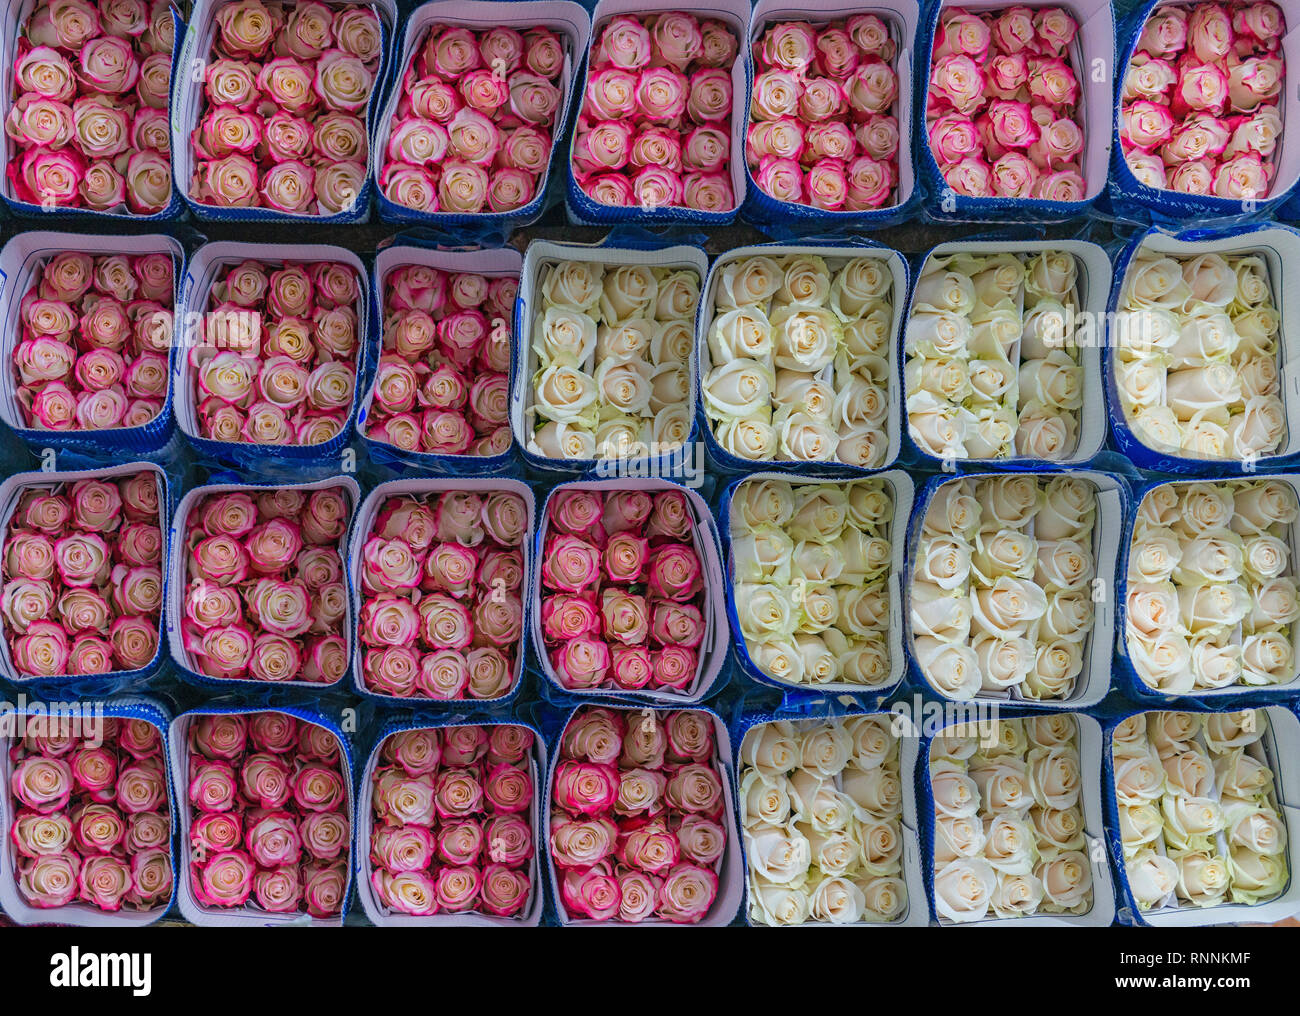 Des douzaines de roses roses et blanches prêtes à exporter à l'économie mondiale à Cayambe, au nord de Quito, Equateur. Banque D'Images